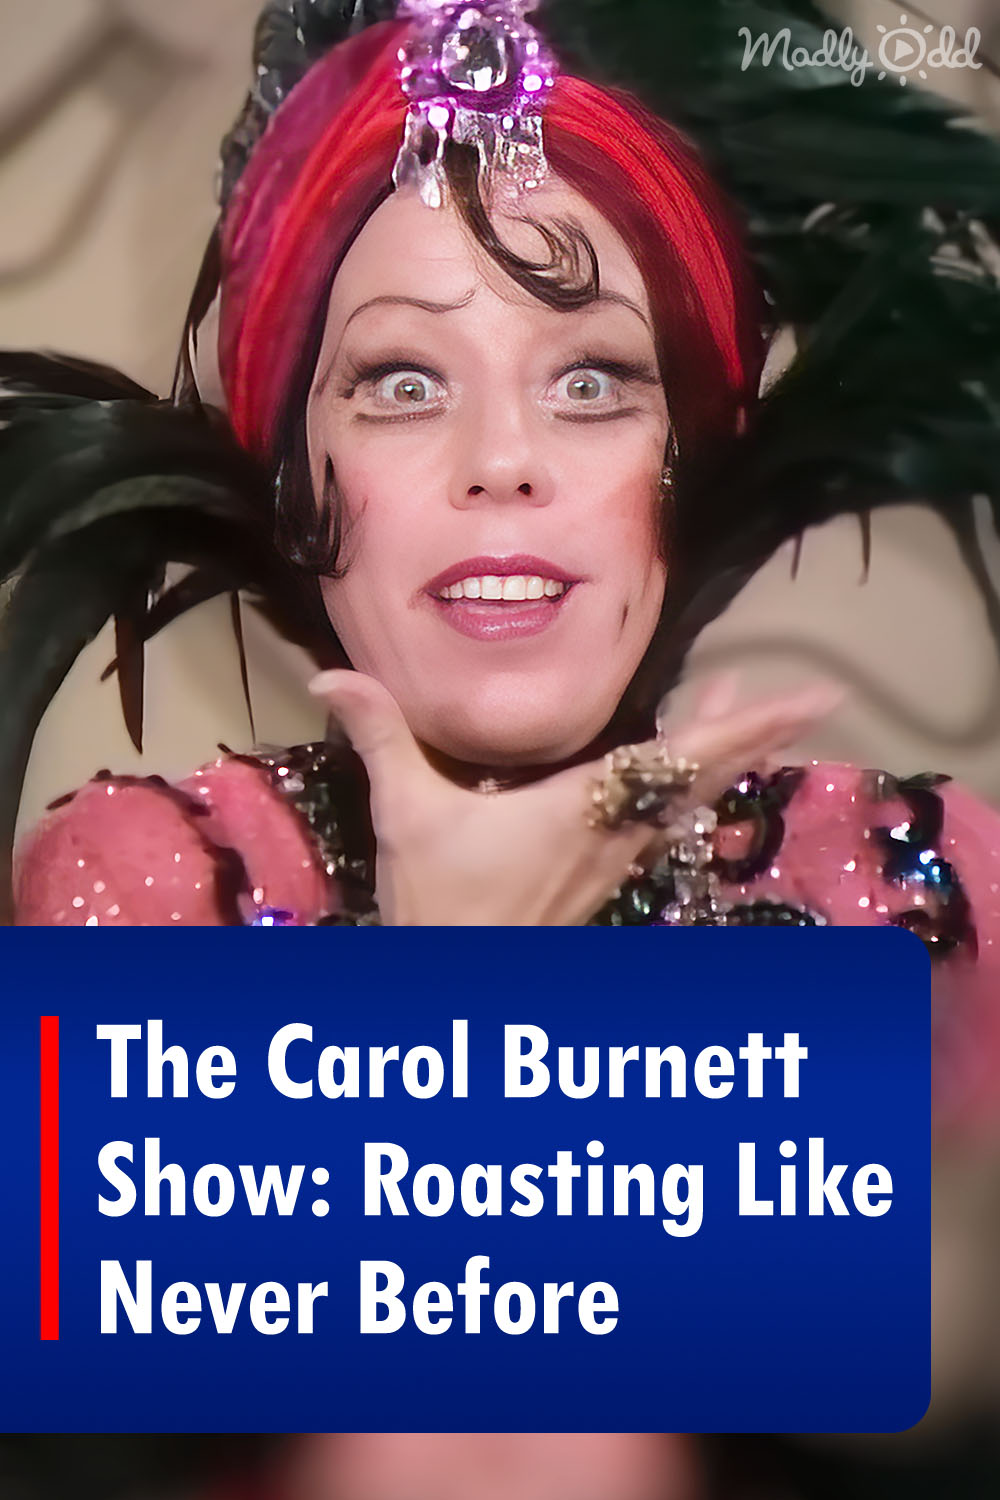 The Carol Burnett Show: Roasting Like Never Before